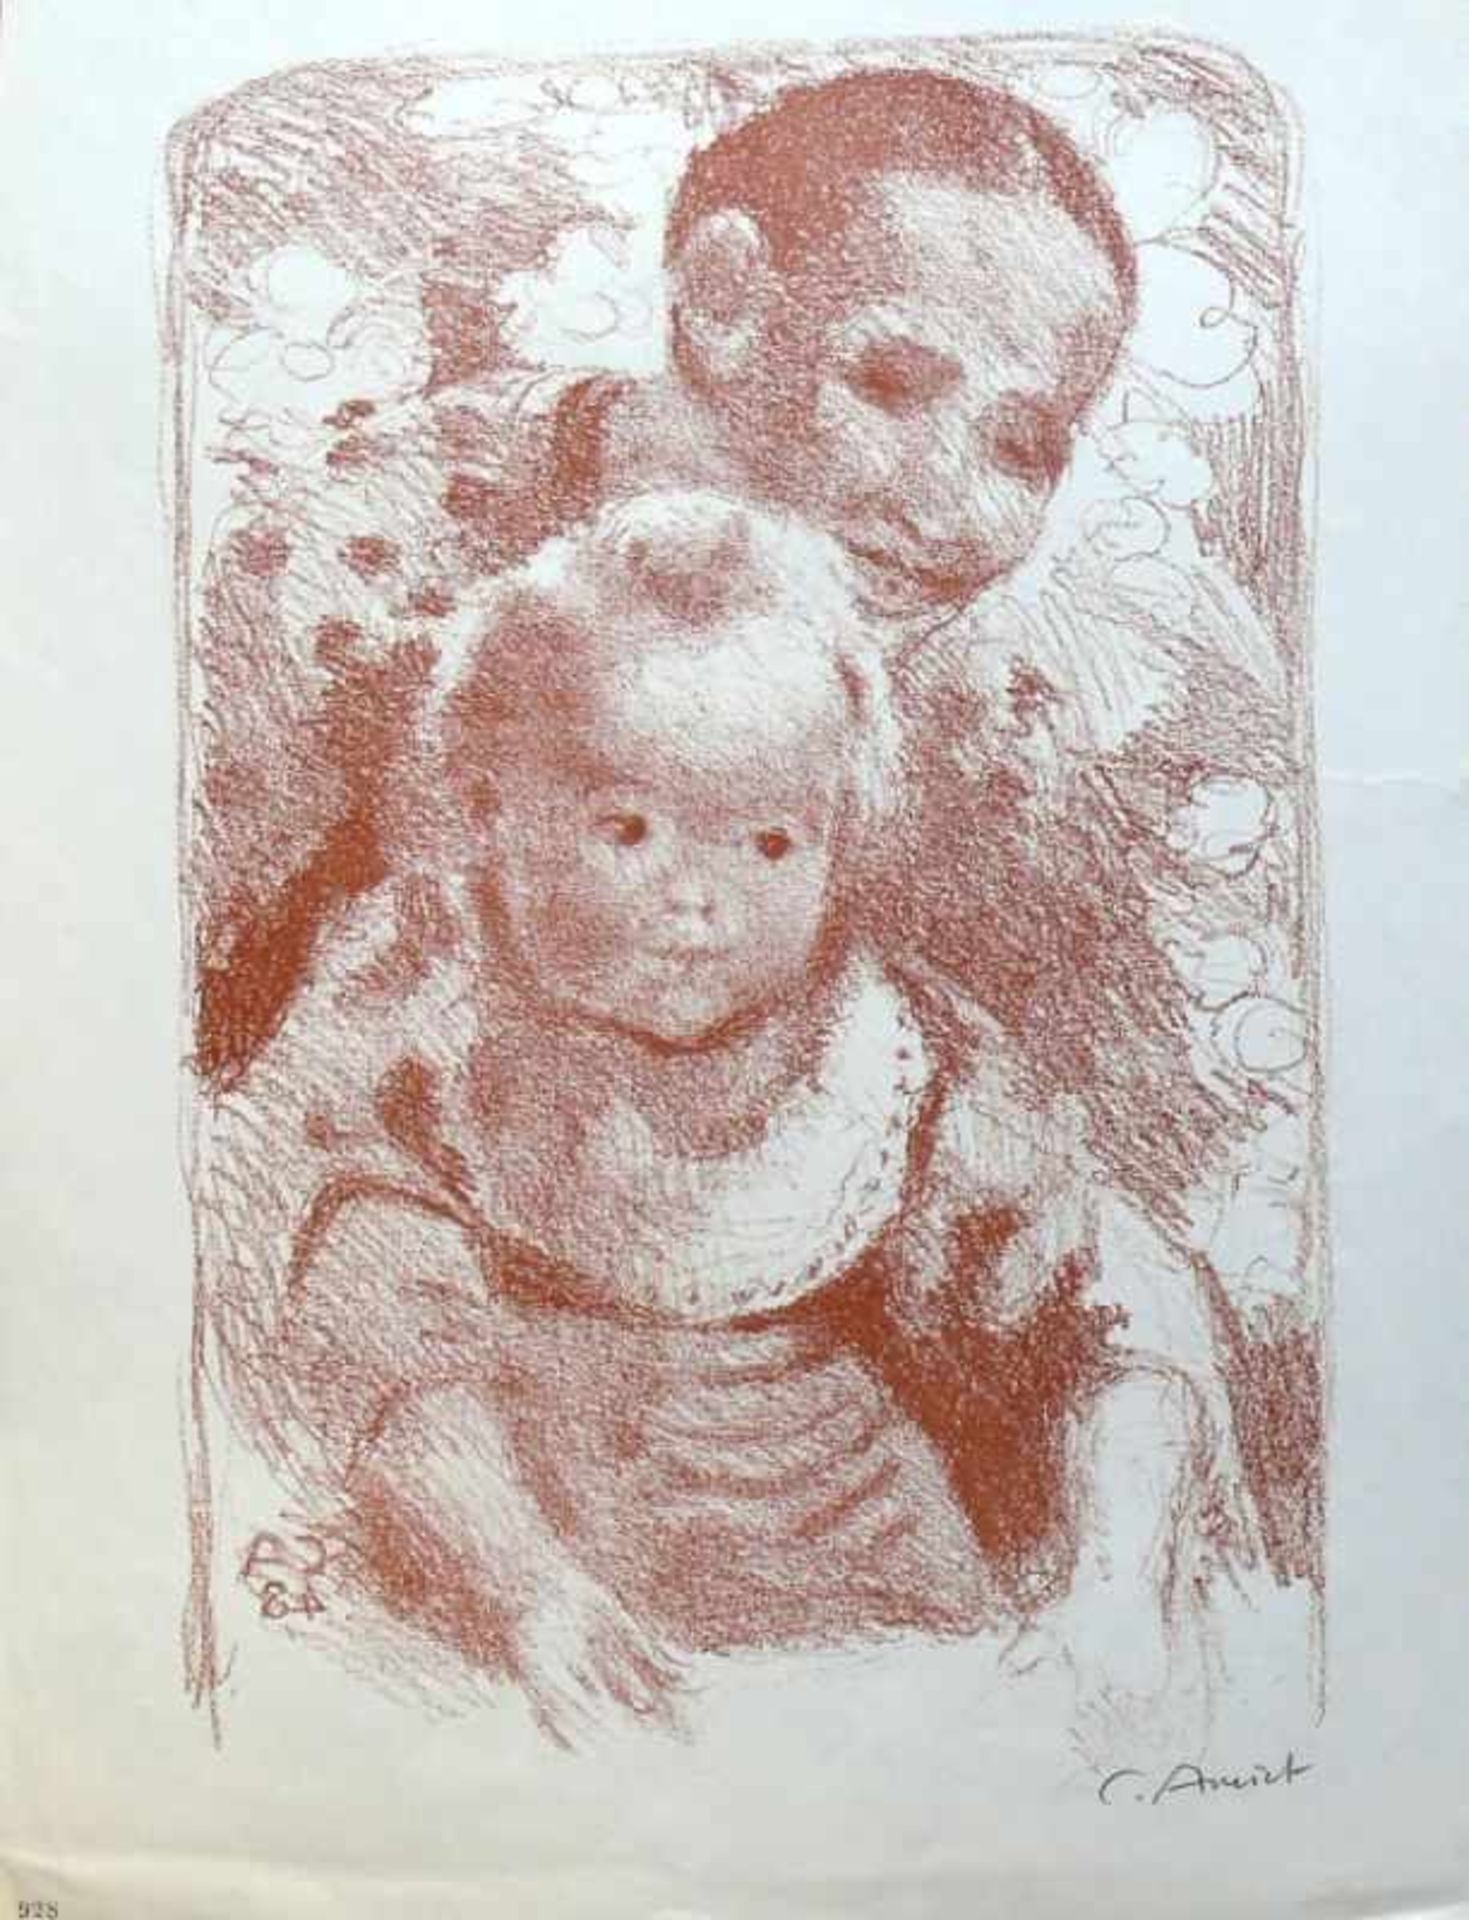 Amiet, Cuno (1868 Solothurn - 1961 Oschwand/BE) "Zwei Lithografien", Bauer mit Kind auf